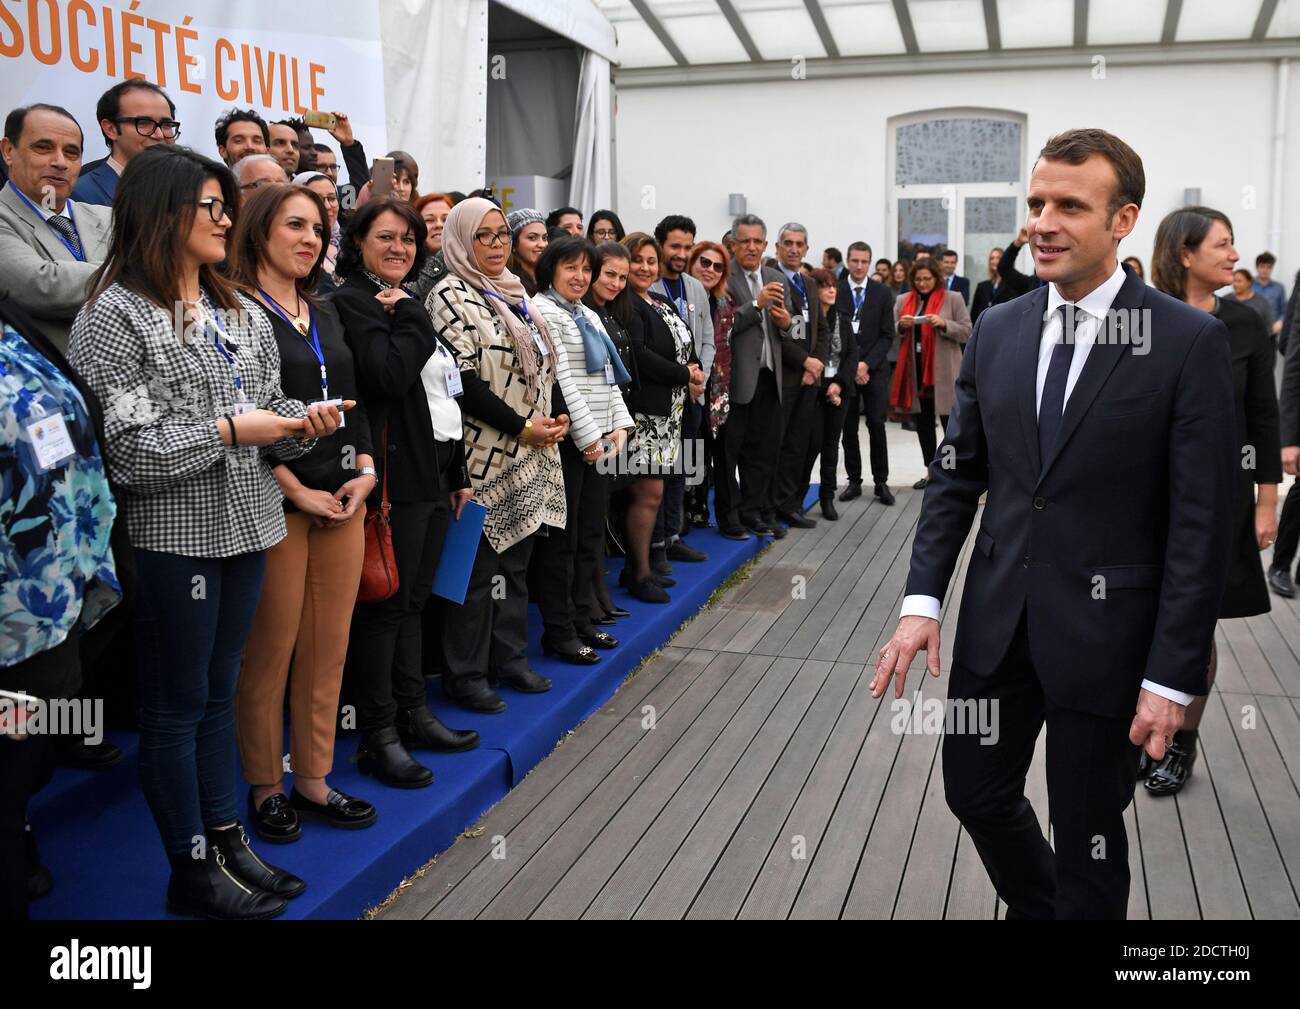 Der französische Präsident Emmanuel Macron trifft sich am 1. Februar 2018 in Tunis mit Mitgliedern der französischen Gemeinschaft in Tunesien. Macron On hat Tunesien zu einem "wichtigen Moment" für seine fragile Demokratie Unterstützung zugesagt, als er zwei Wochen nach Protesten das Land erschütterte, zu einem ersten Besuch eintraf. Foto von Eric Feferberg/Pool/ABACAPRESS.COM Stockfoto